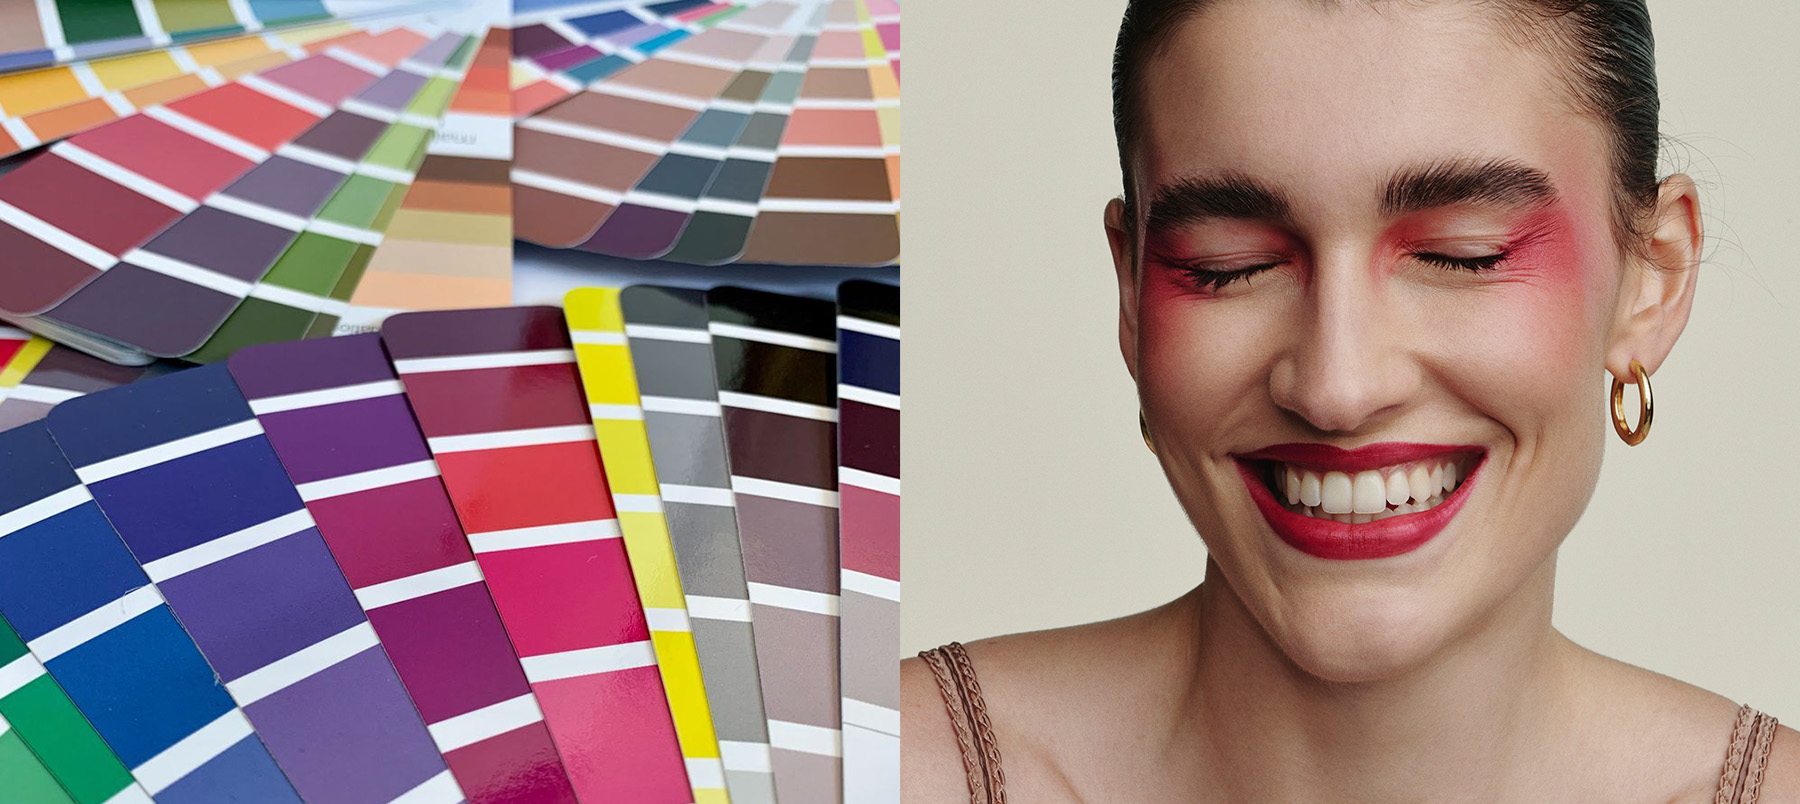 Blog Mania T: Colorimetria na Maquiagem: Que cor de sombra combina com a cor  do meu olho?